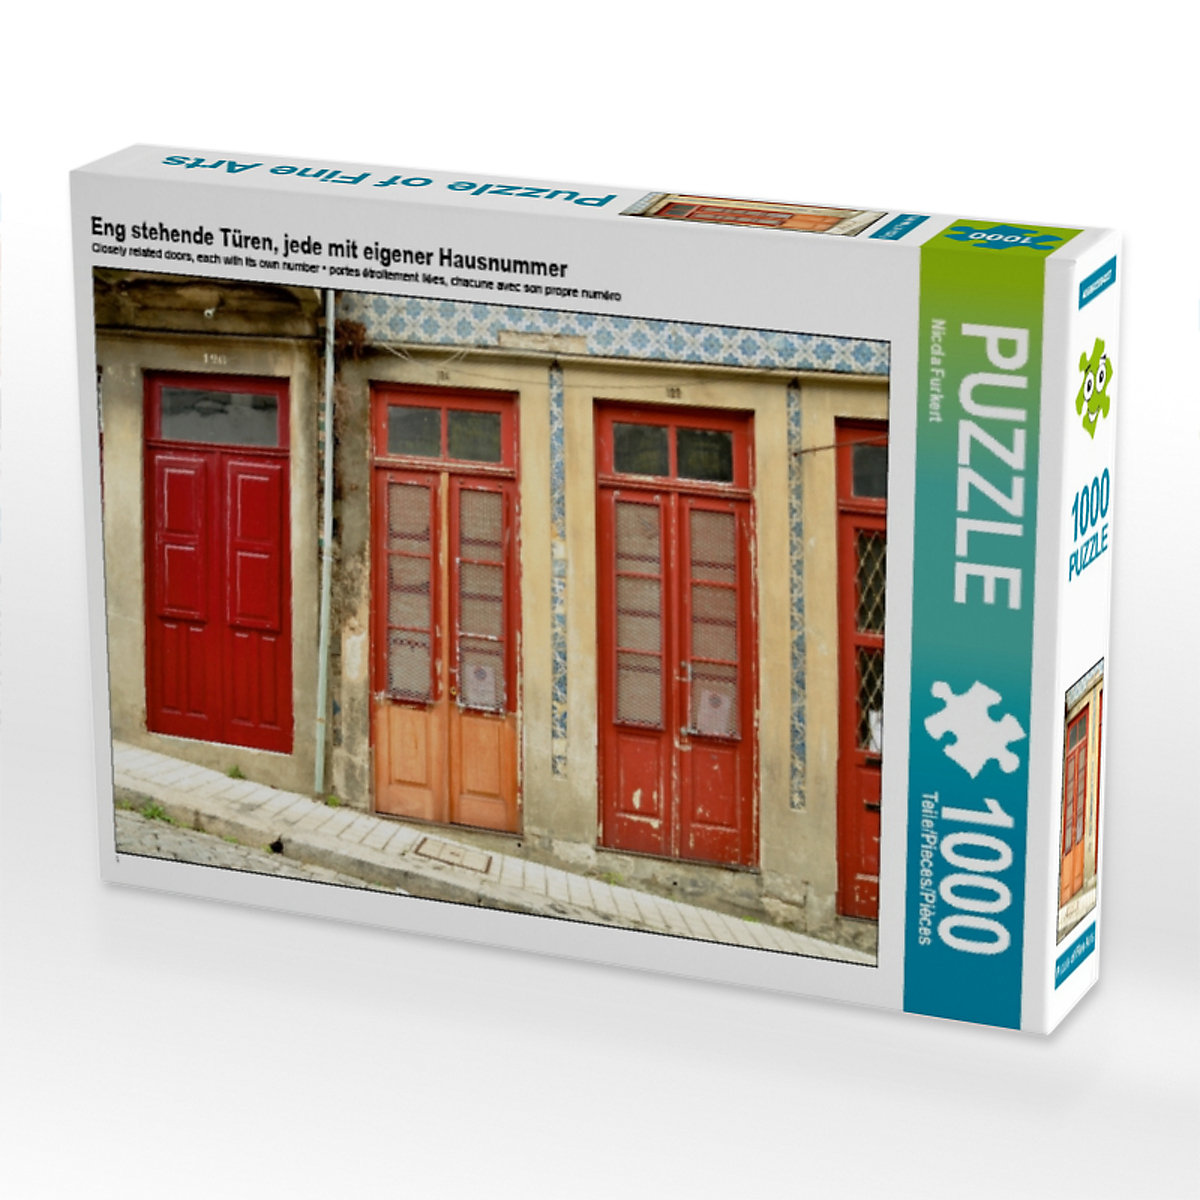 CALVENDO® Puzzle CALVENDO Puzzle Eng stehende Türen jede mit eigener Hausnummer 1000 Teile Foto-Puzzle für glückliche Stunden